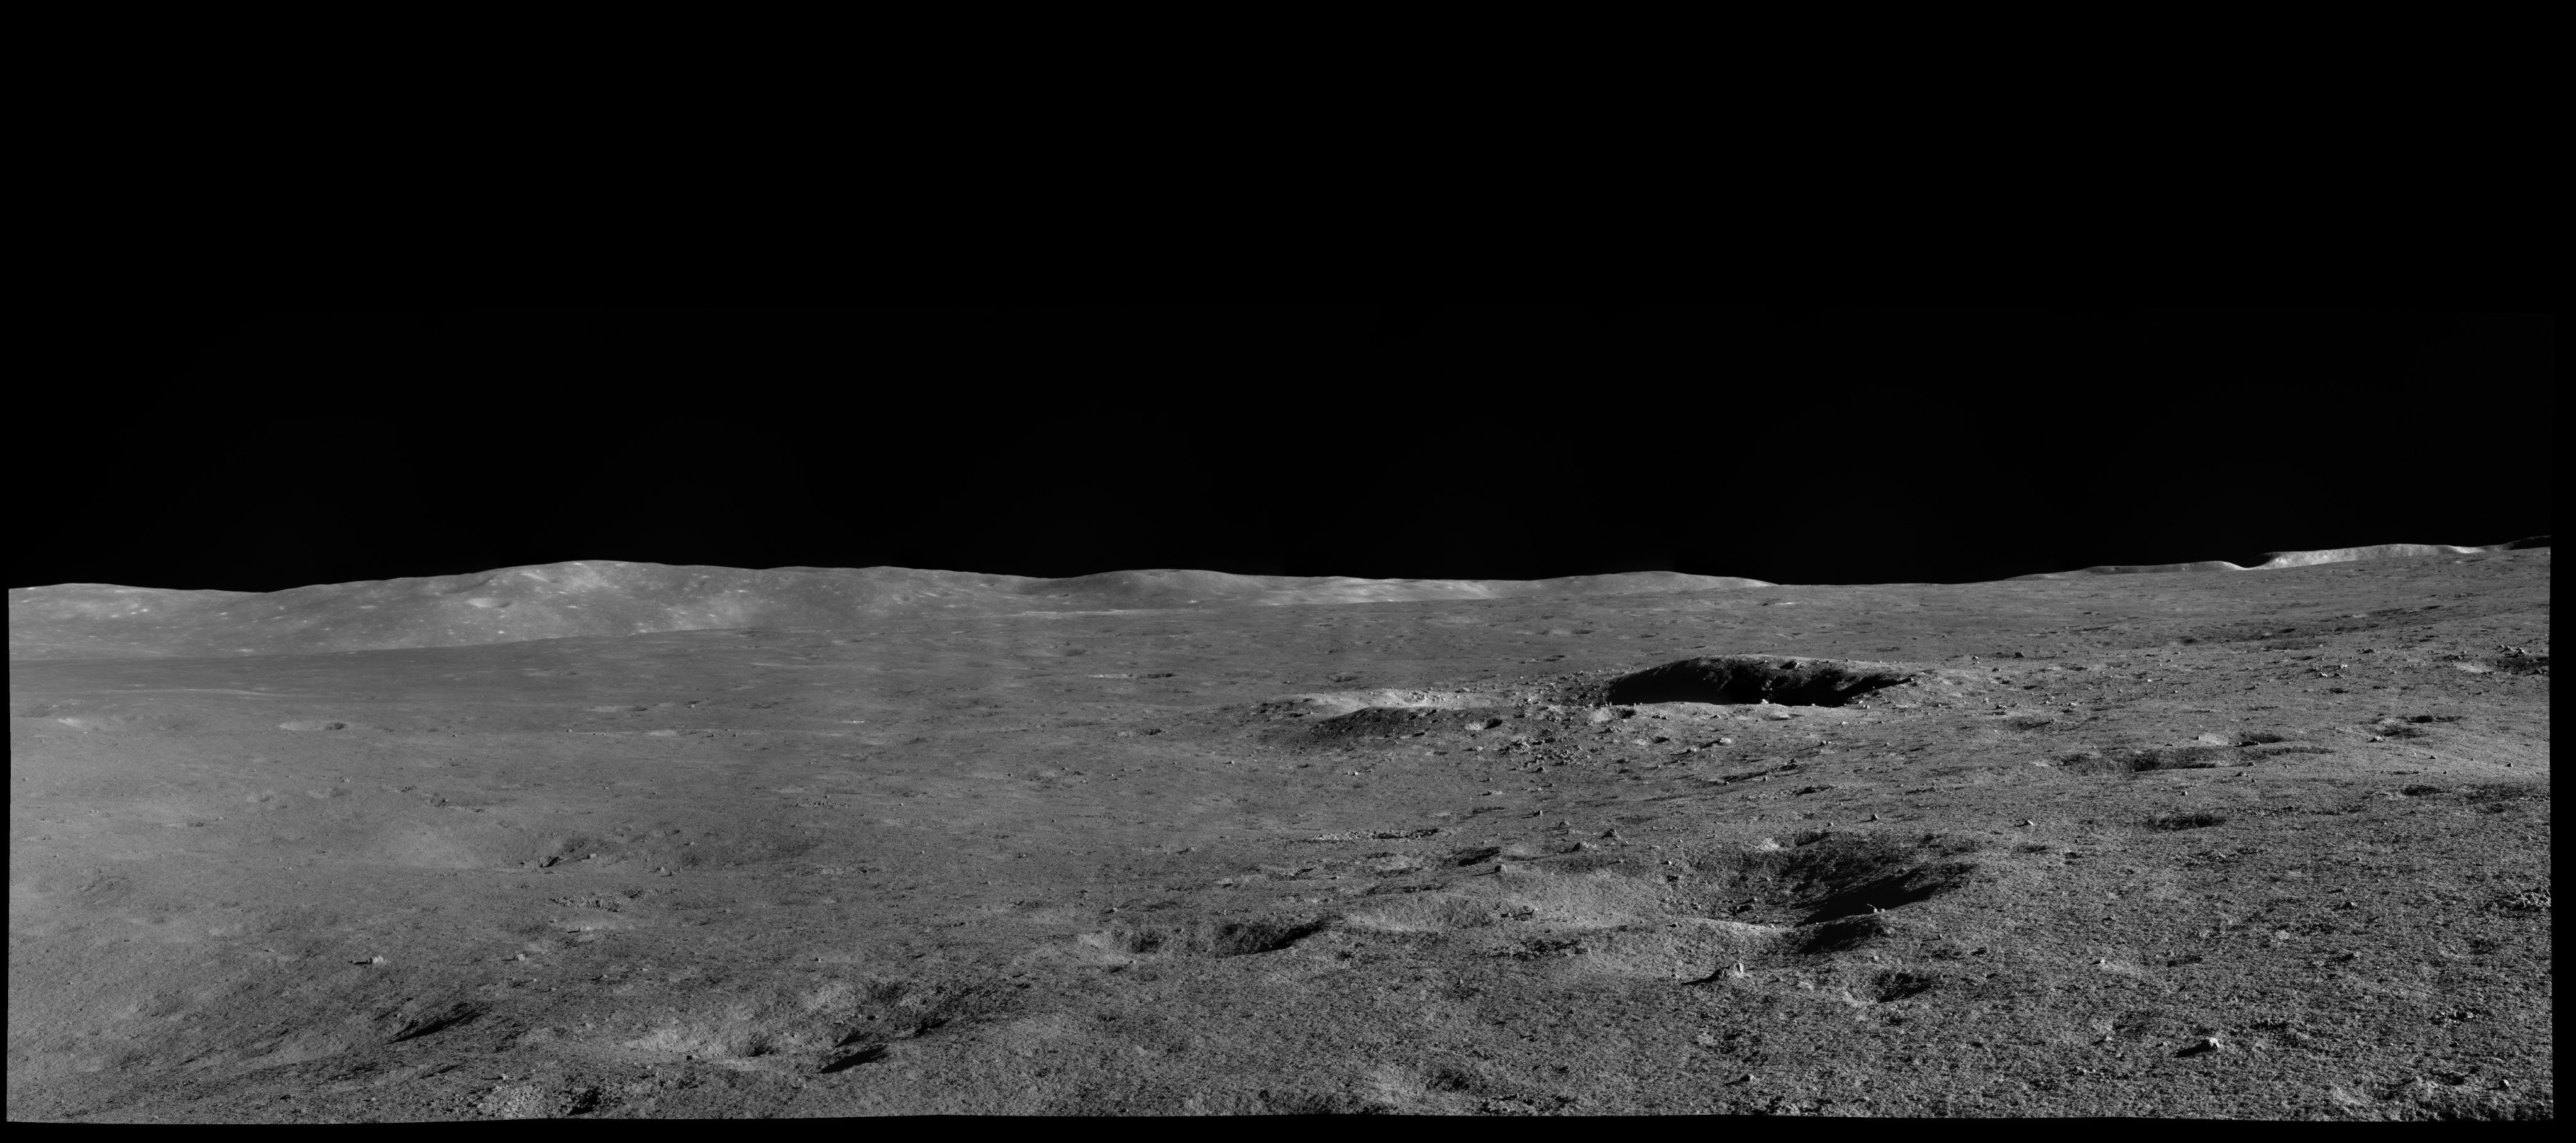 Что будет без луны. Юйту-2. Луноход Юйту-2. Снимок поверхности Луны. Поверхность Луны ландшафт.